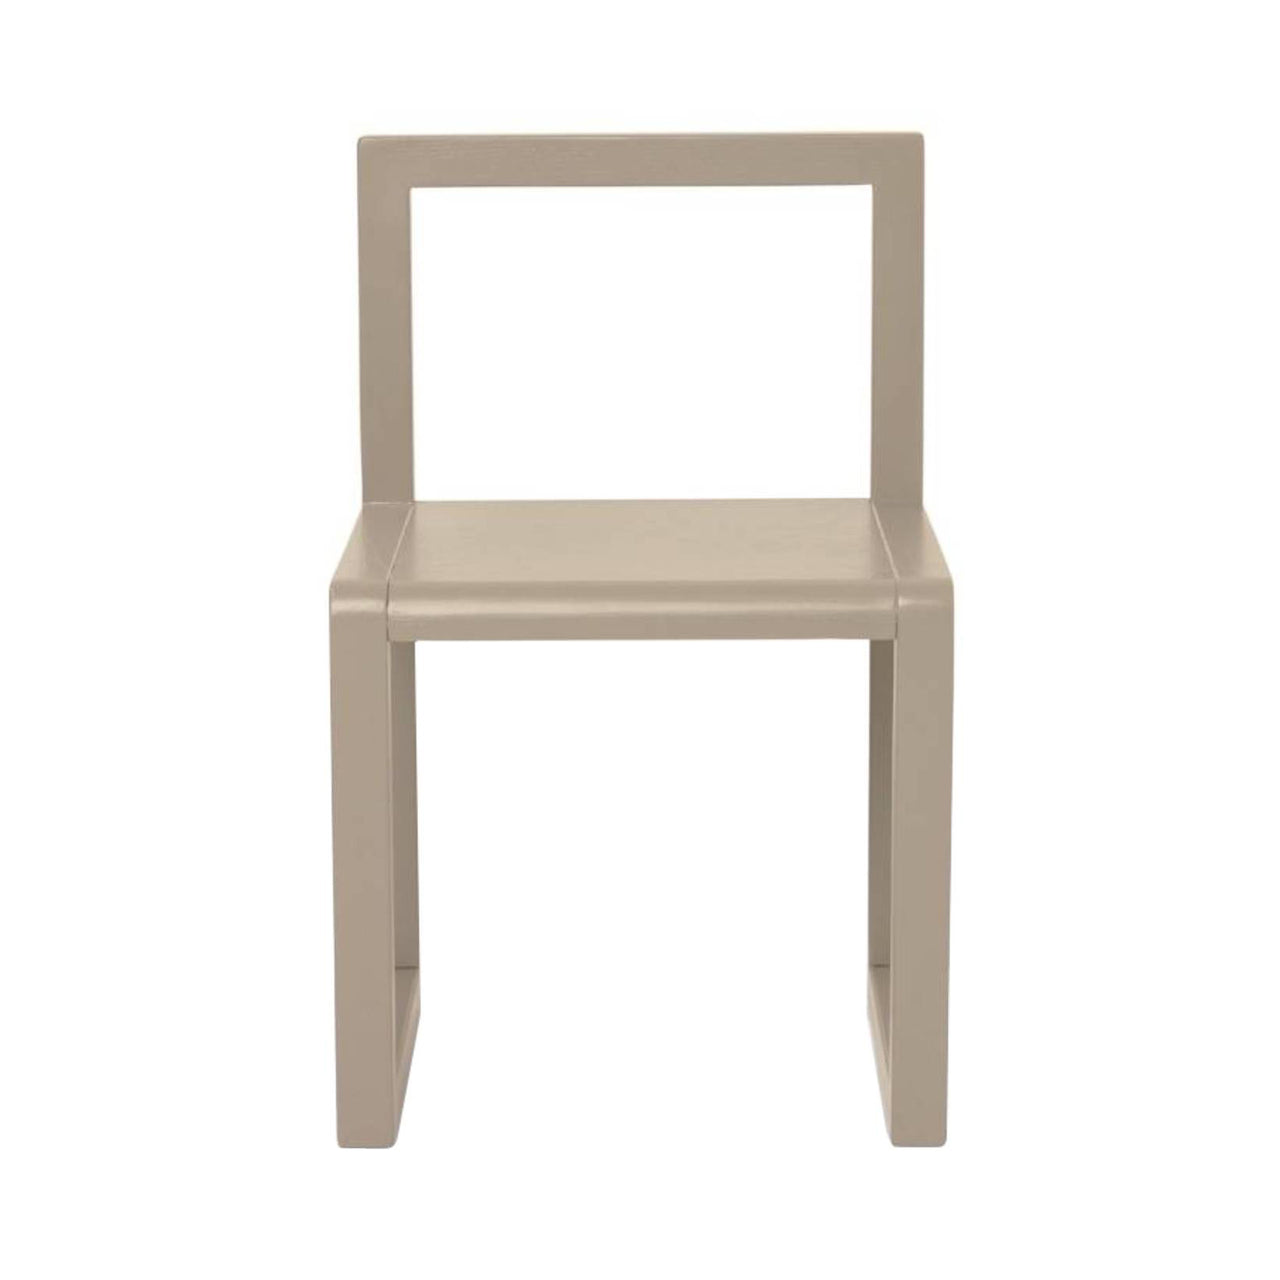 Little Architect Chair: Cashmere